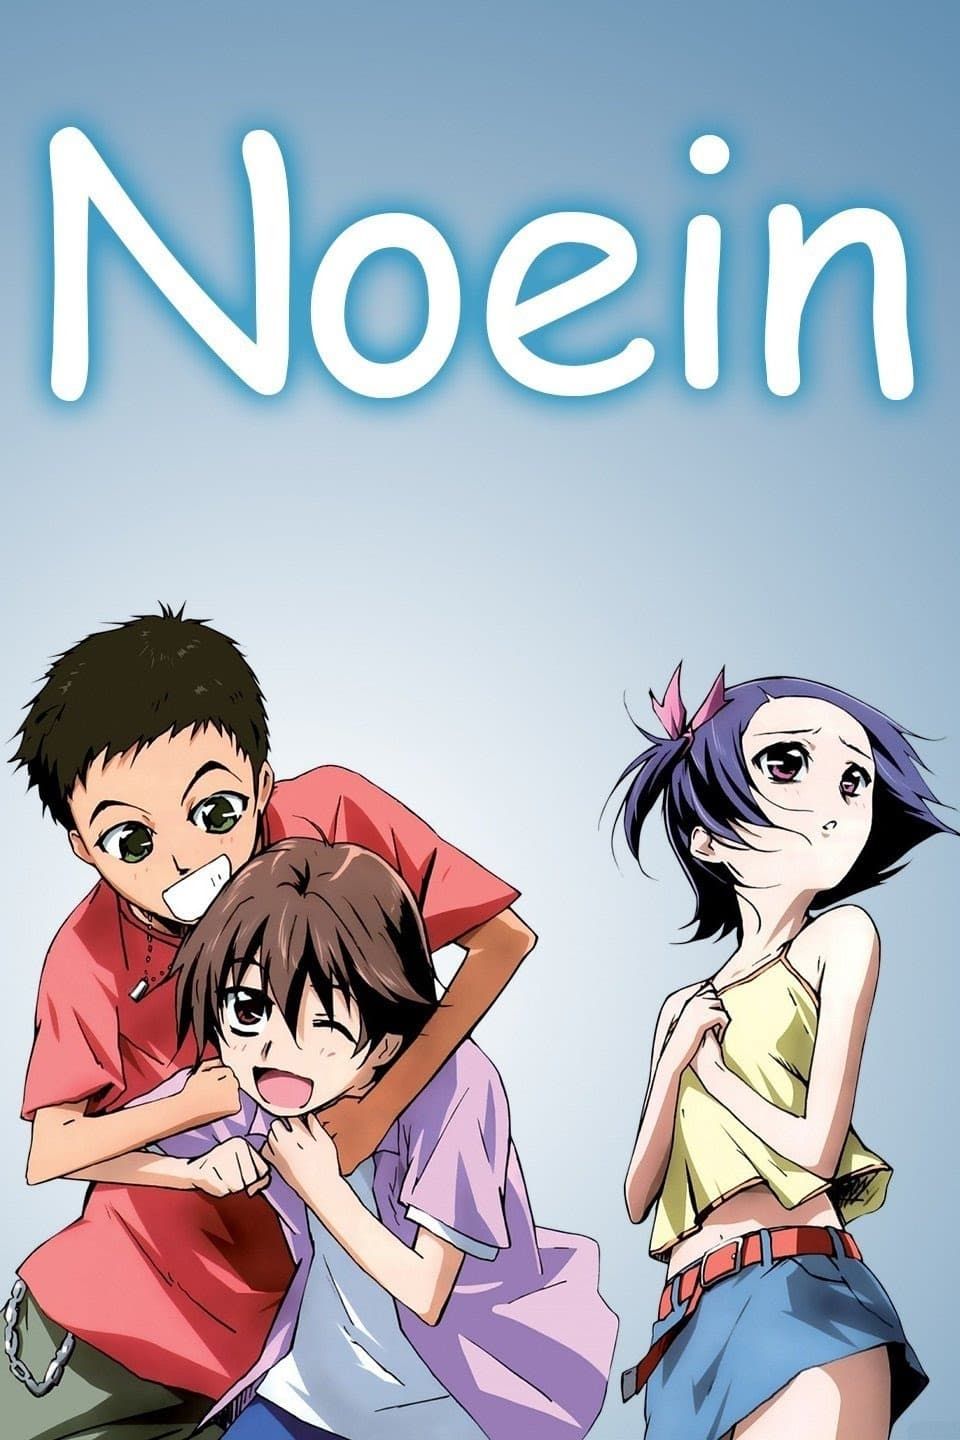 [Adventure] Noein: Mou Hitori no Kimi e (TV) (Sub) Best Version